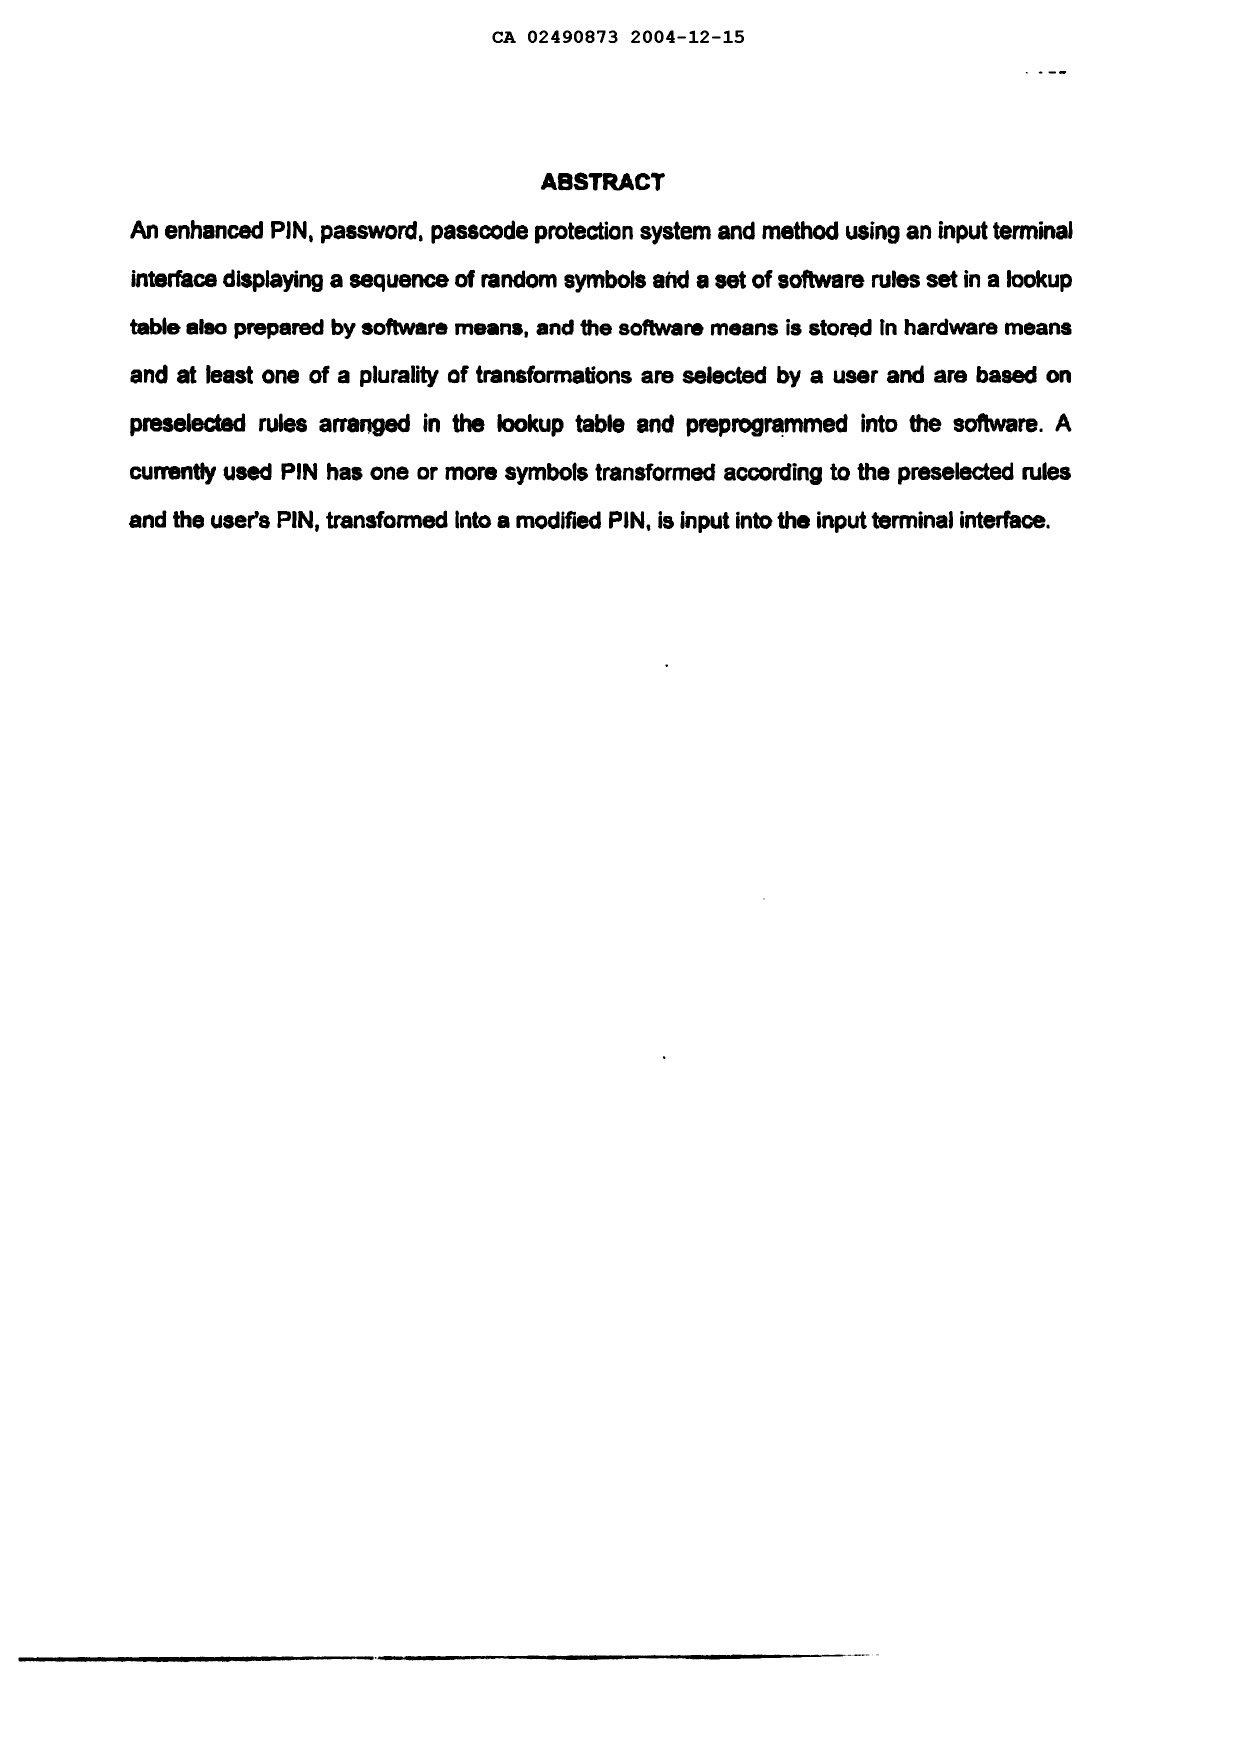 Document de brevet canadien 2490873. Abrégé 20031215. Image 1 de 1